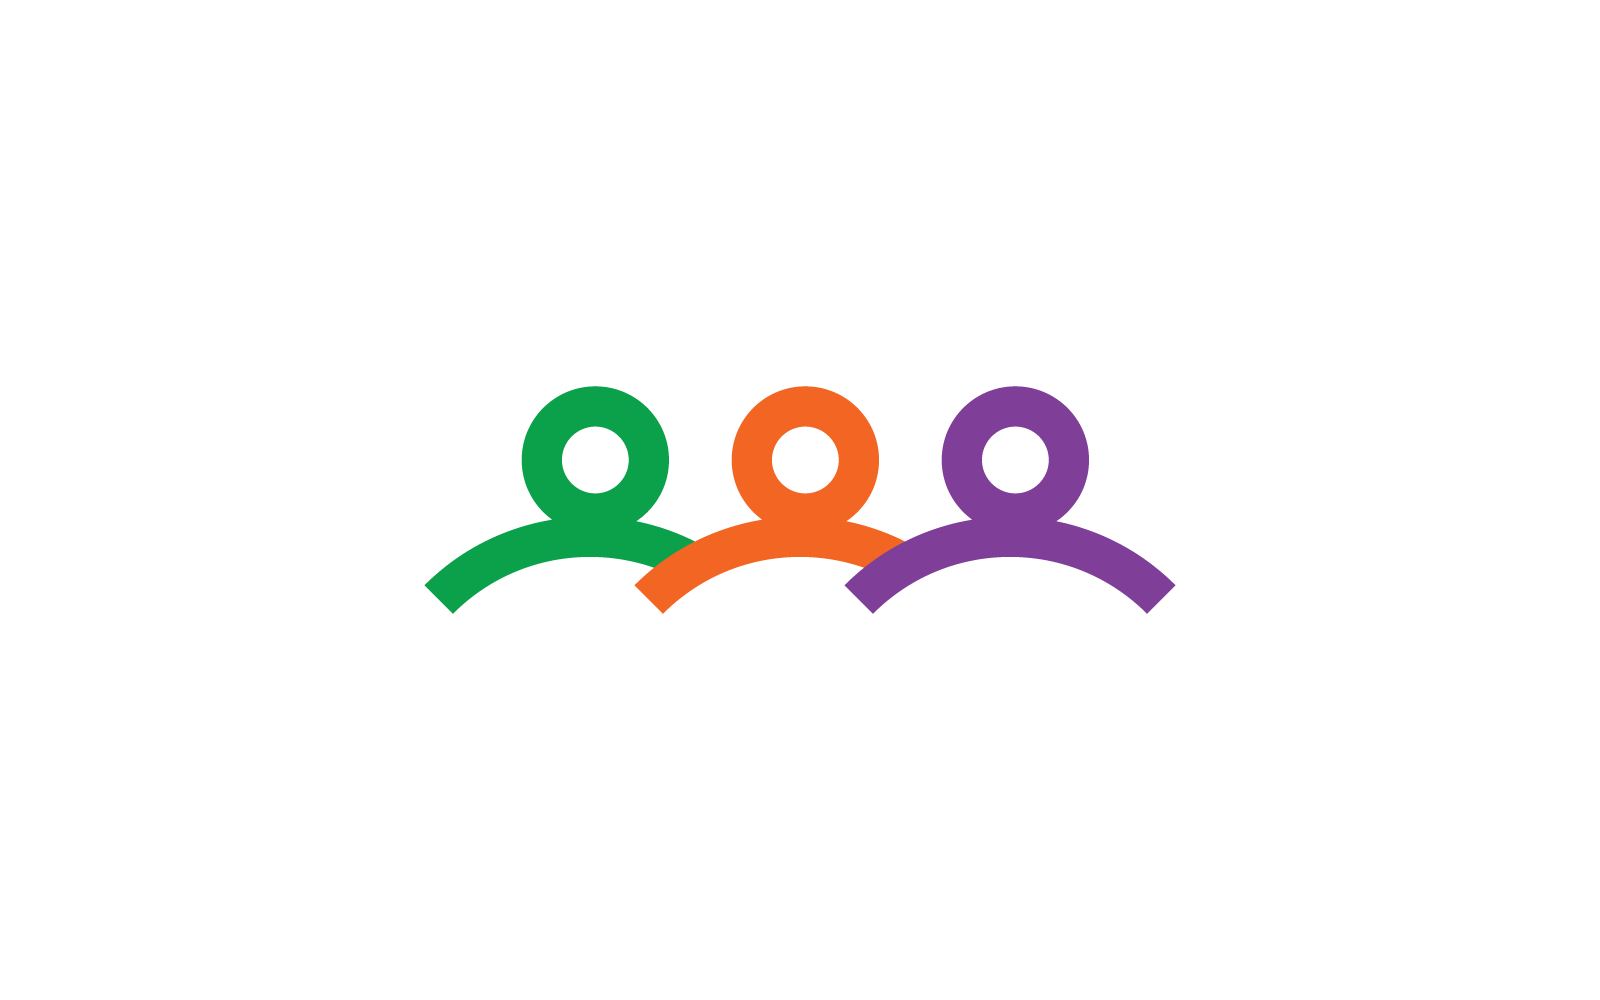 Disability logo, family care, or Community care logo design